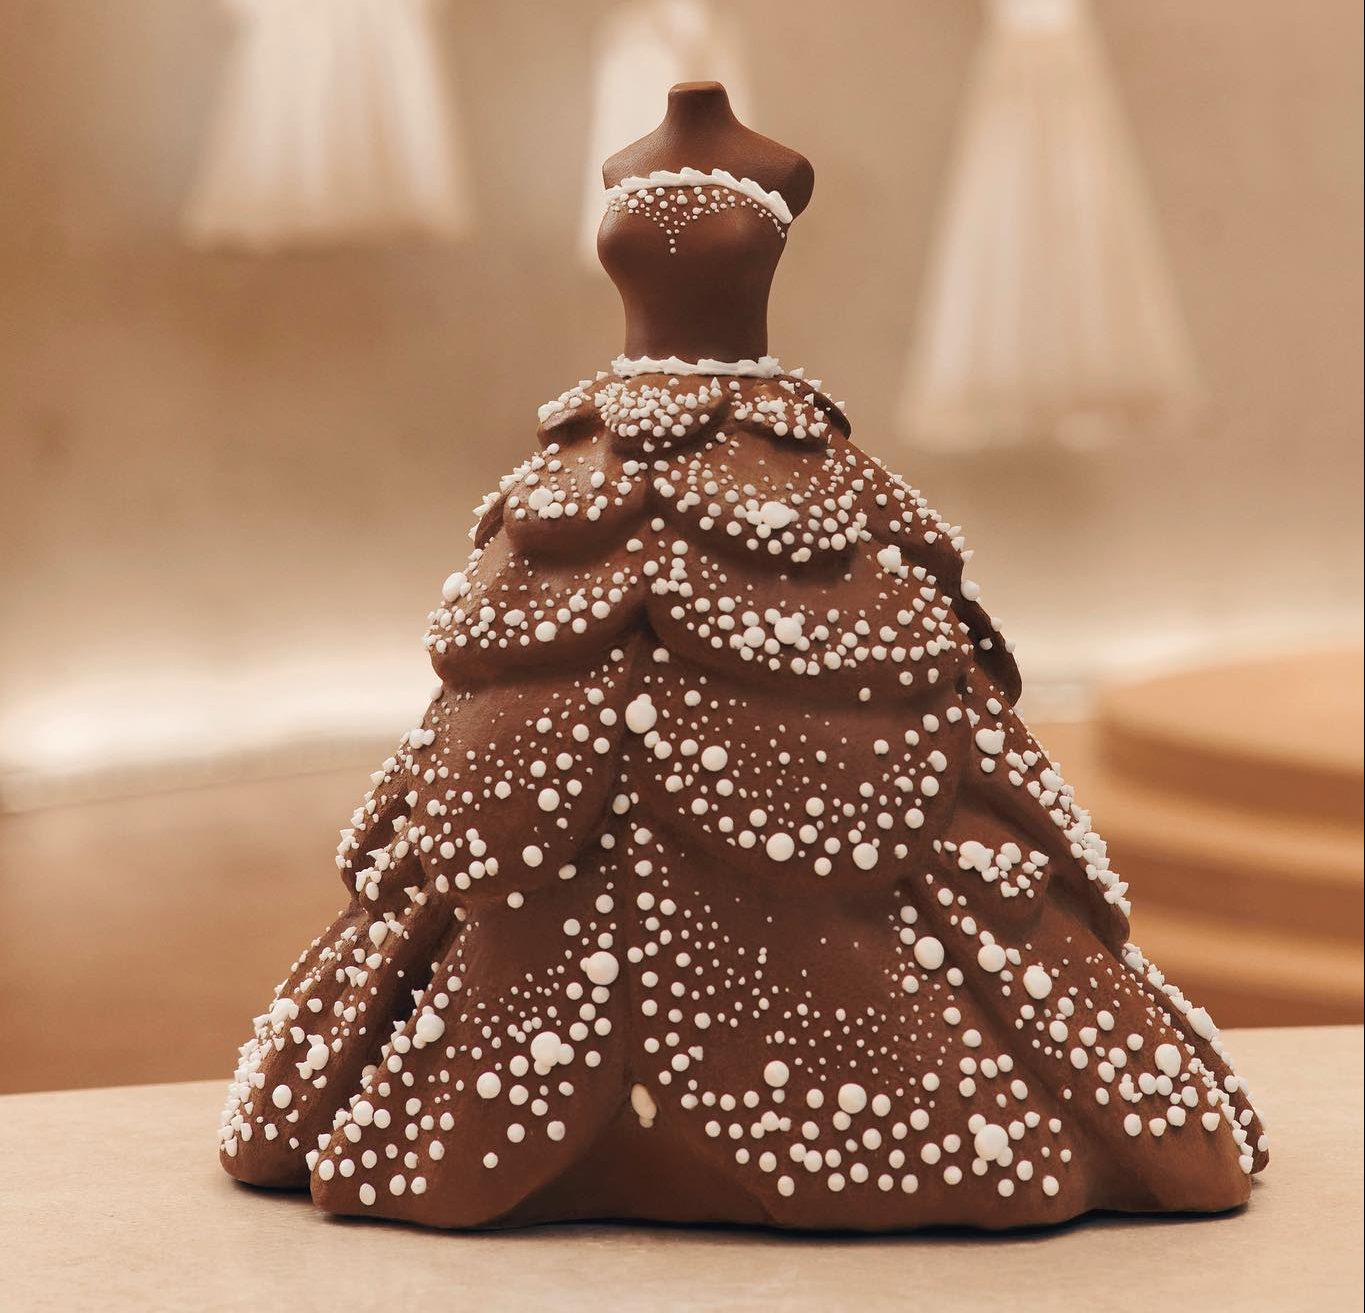 Σοκολατένιες δημιουργίες Υψηλής Ραπτικής από τον οίκο Dior